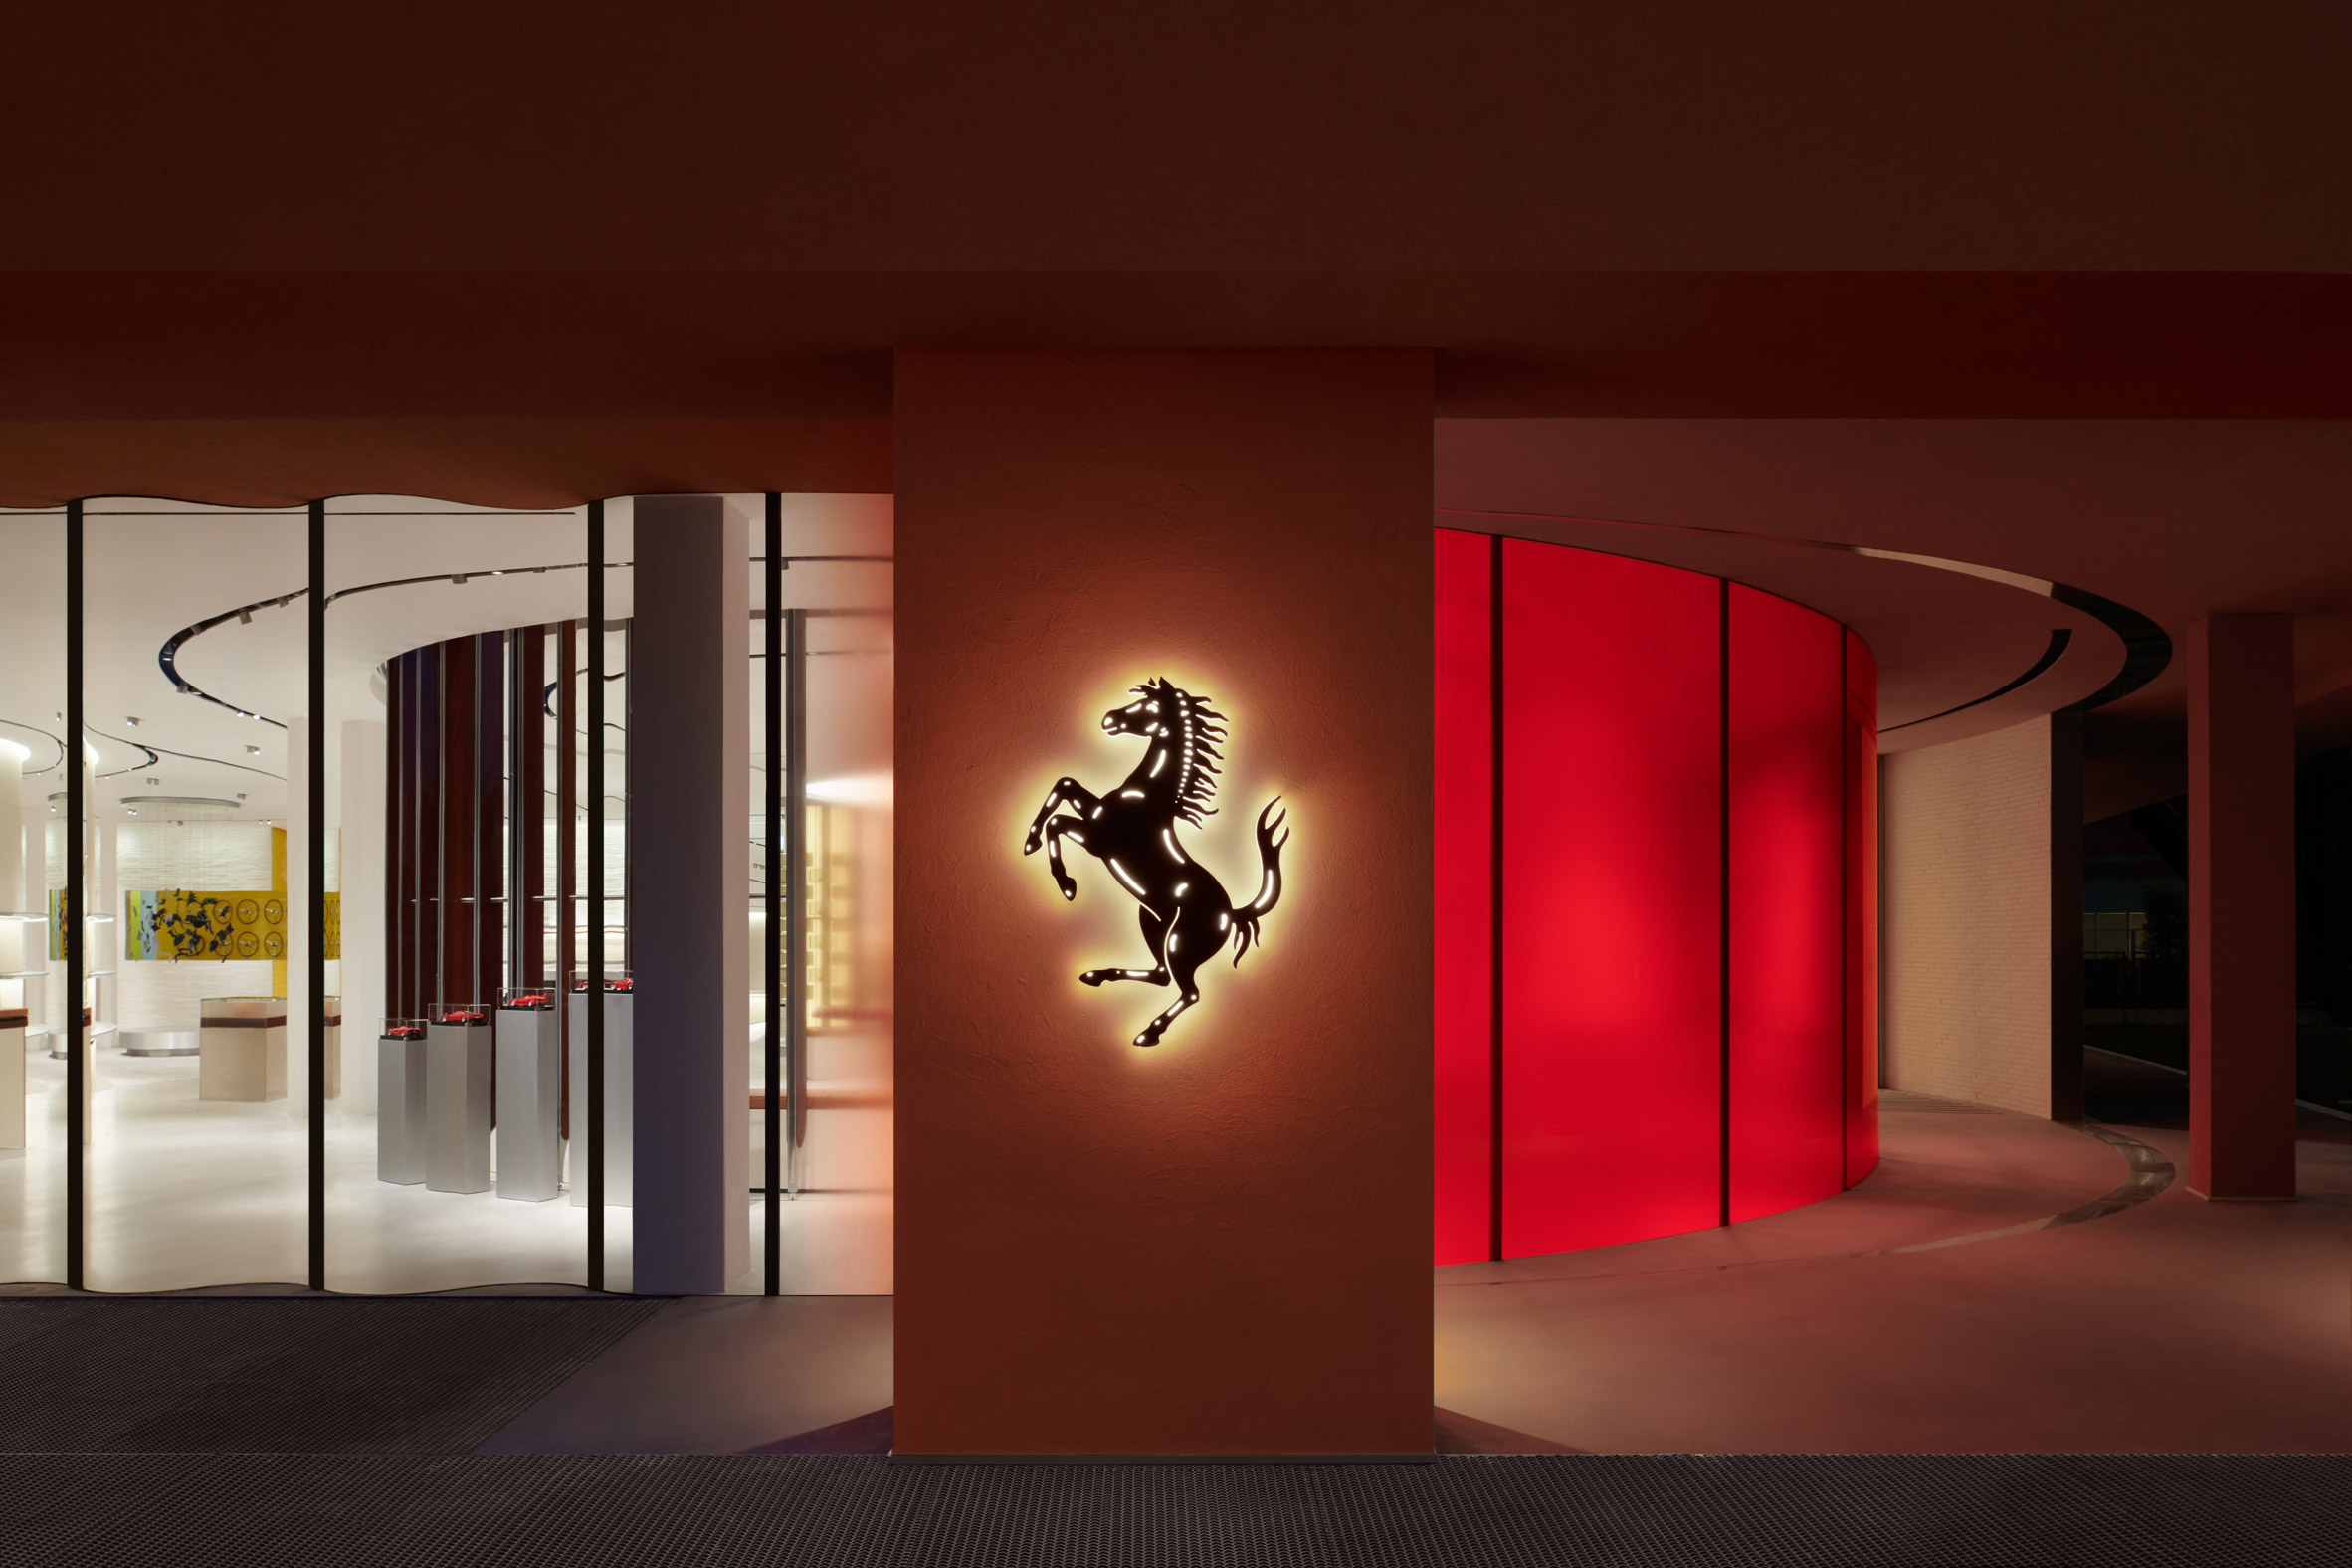 Gucci Inspired Ferrari Interior